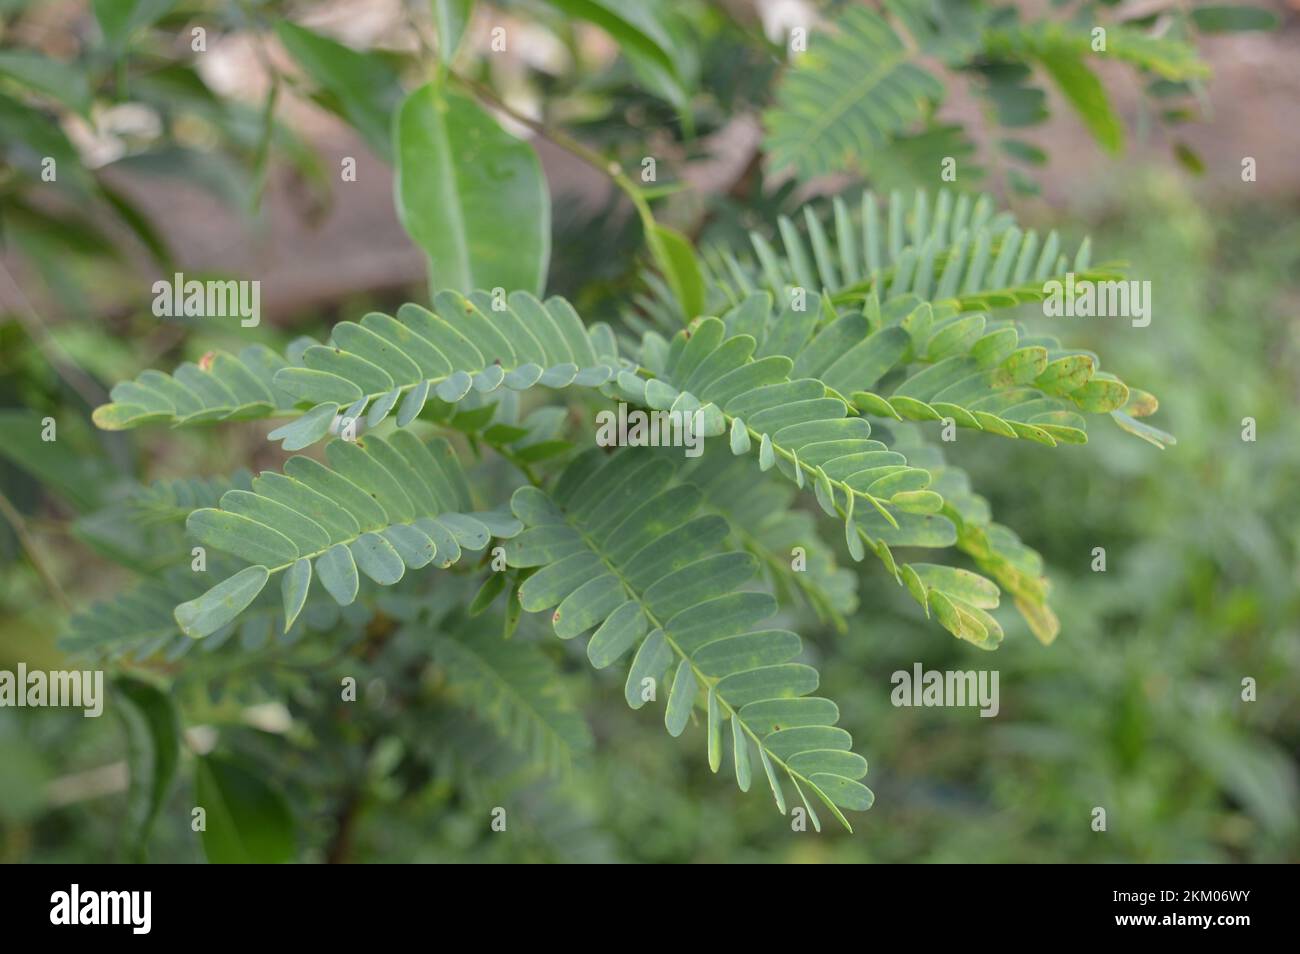 Tamarind leaves. Stock Photo